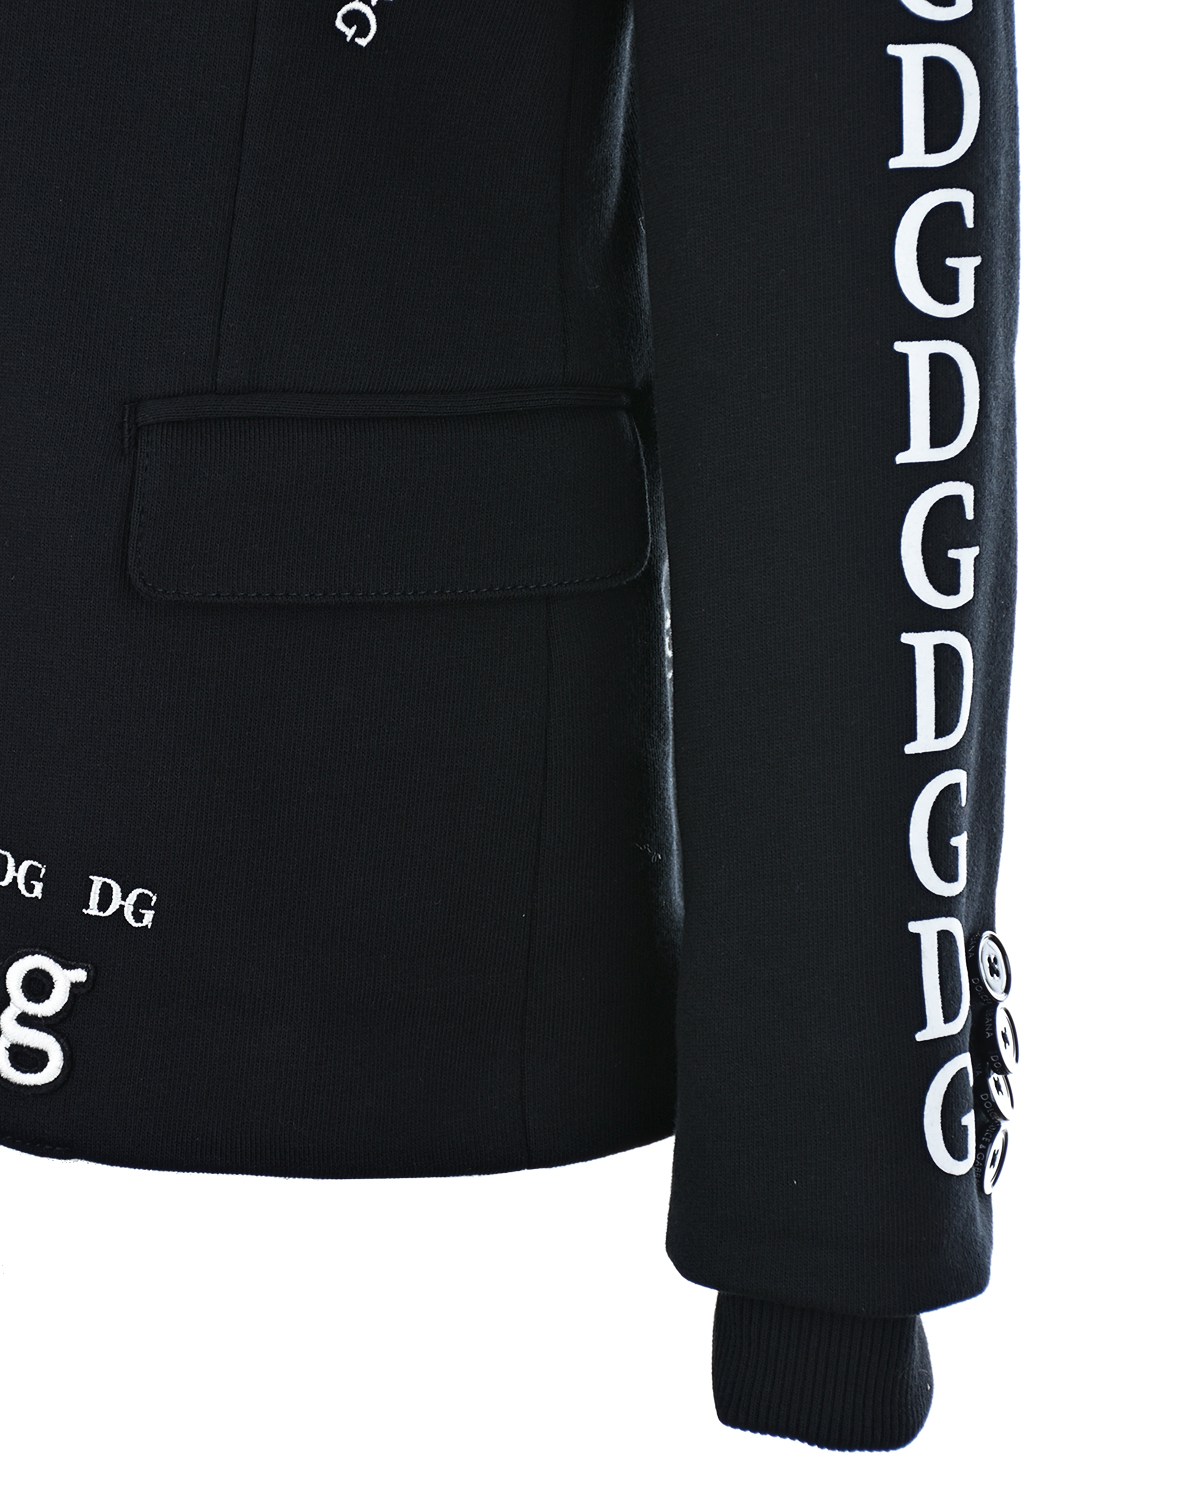 Однобортный пиджак из джерси с вышитым логотипом Dolce&Gabbana детский, размер 116, цвет черный - фото 5